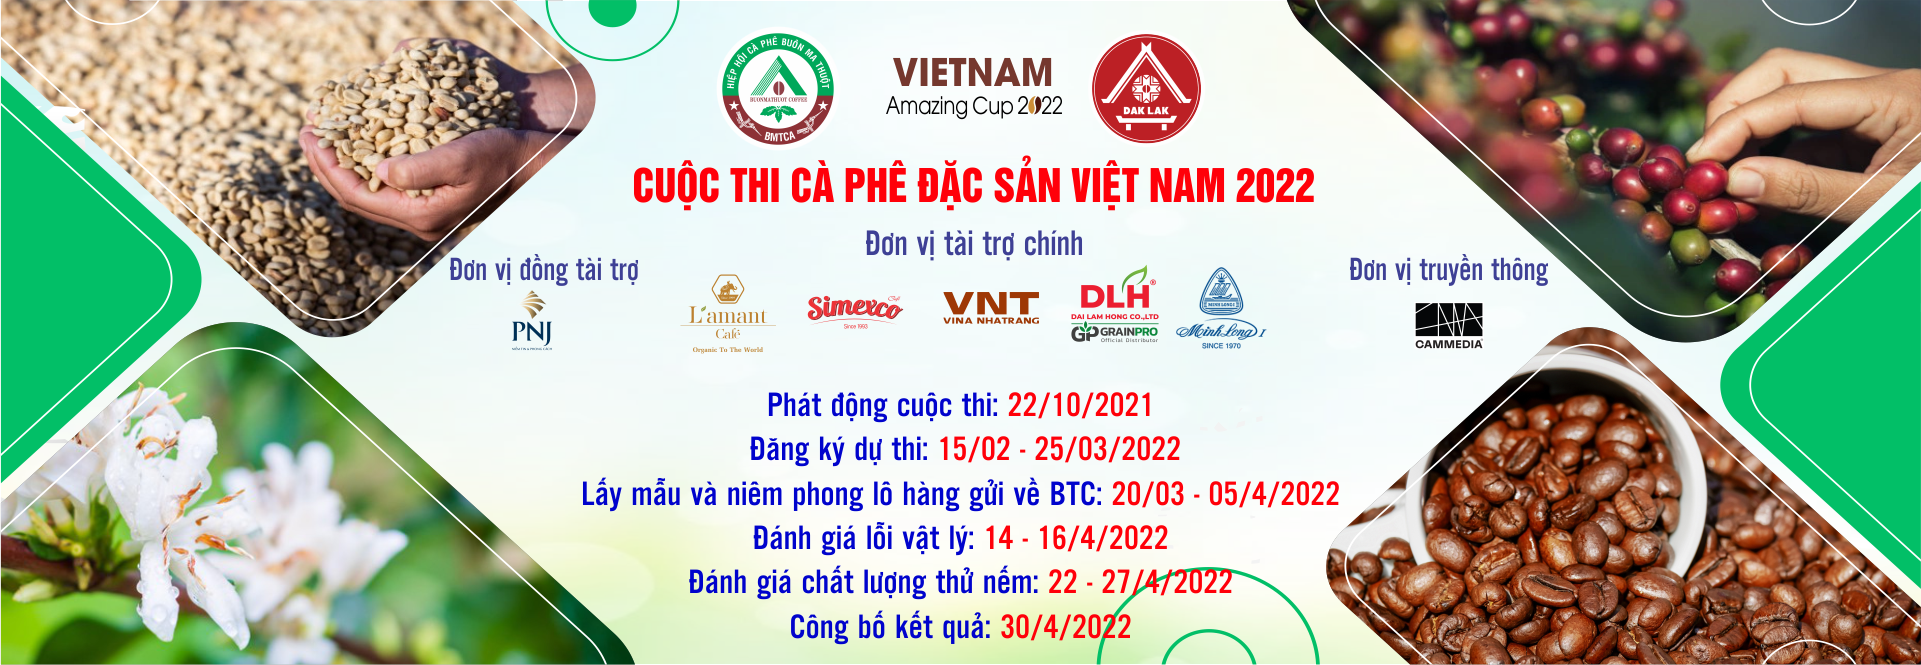 Cuộc thi cà phê đặc sản Việt Nam 2022